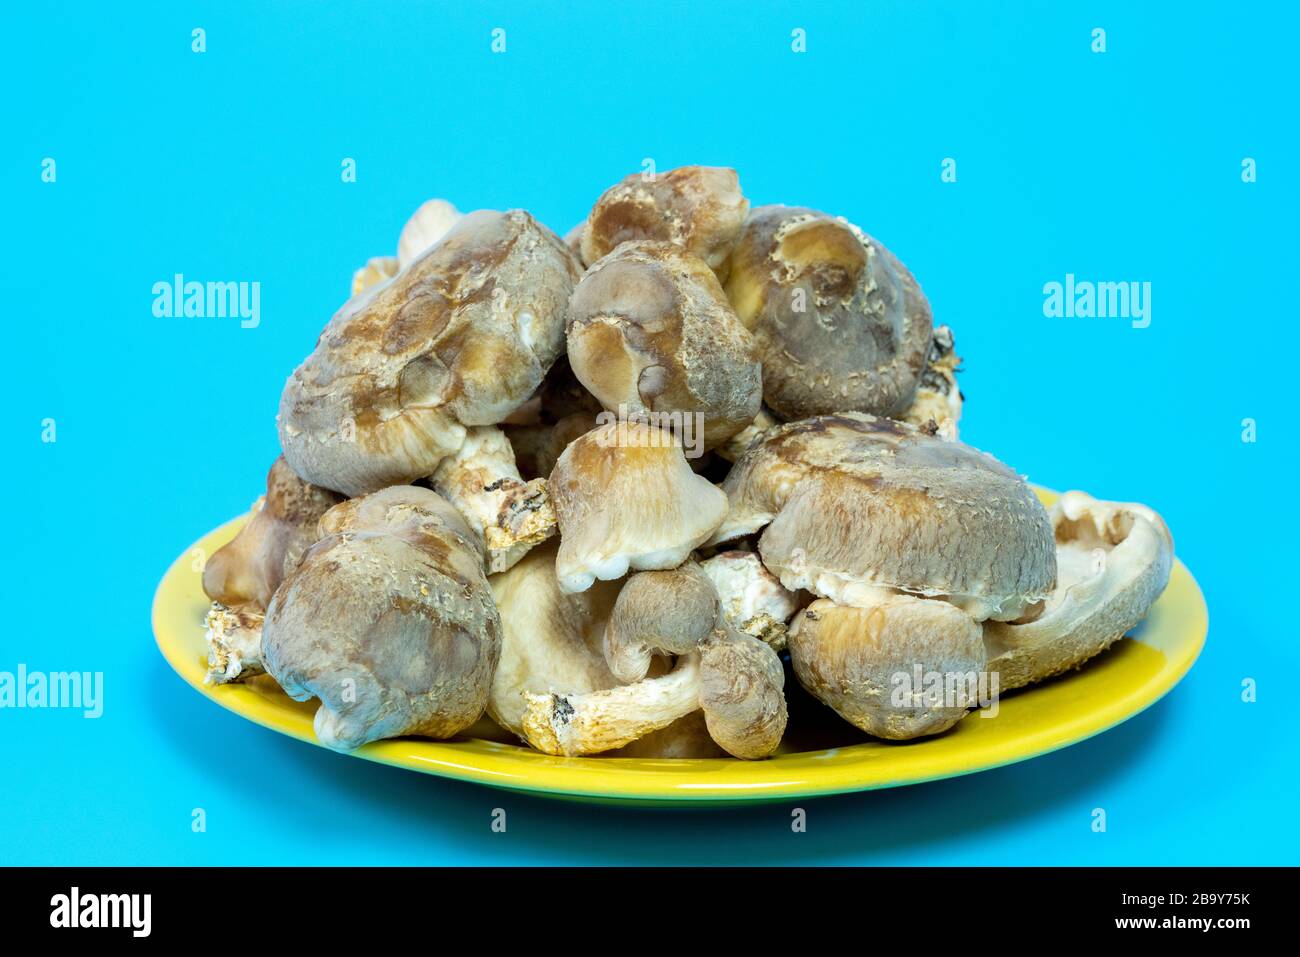 Funghi shiitake sul piatto. È considerato un fungo medicinale in alcune forme di medicina tradizionale Foto Stock